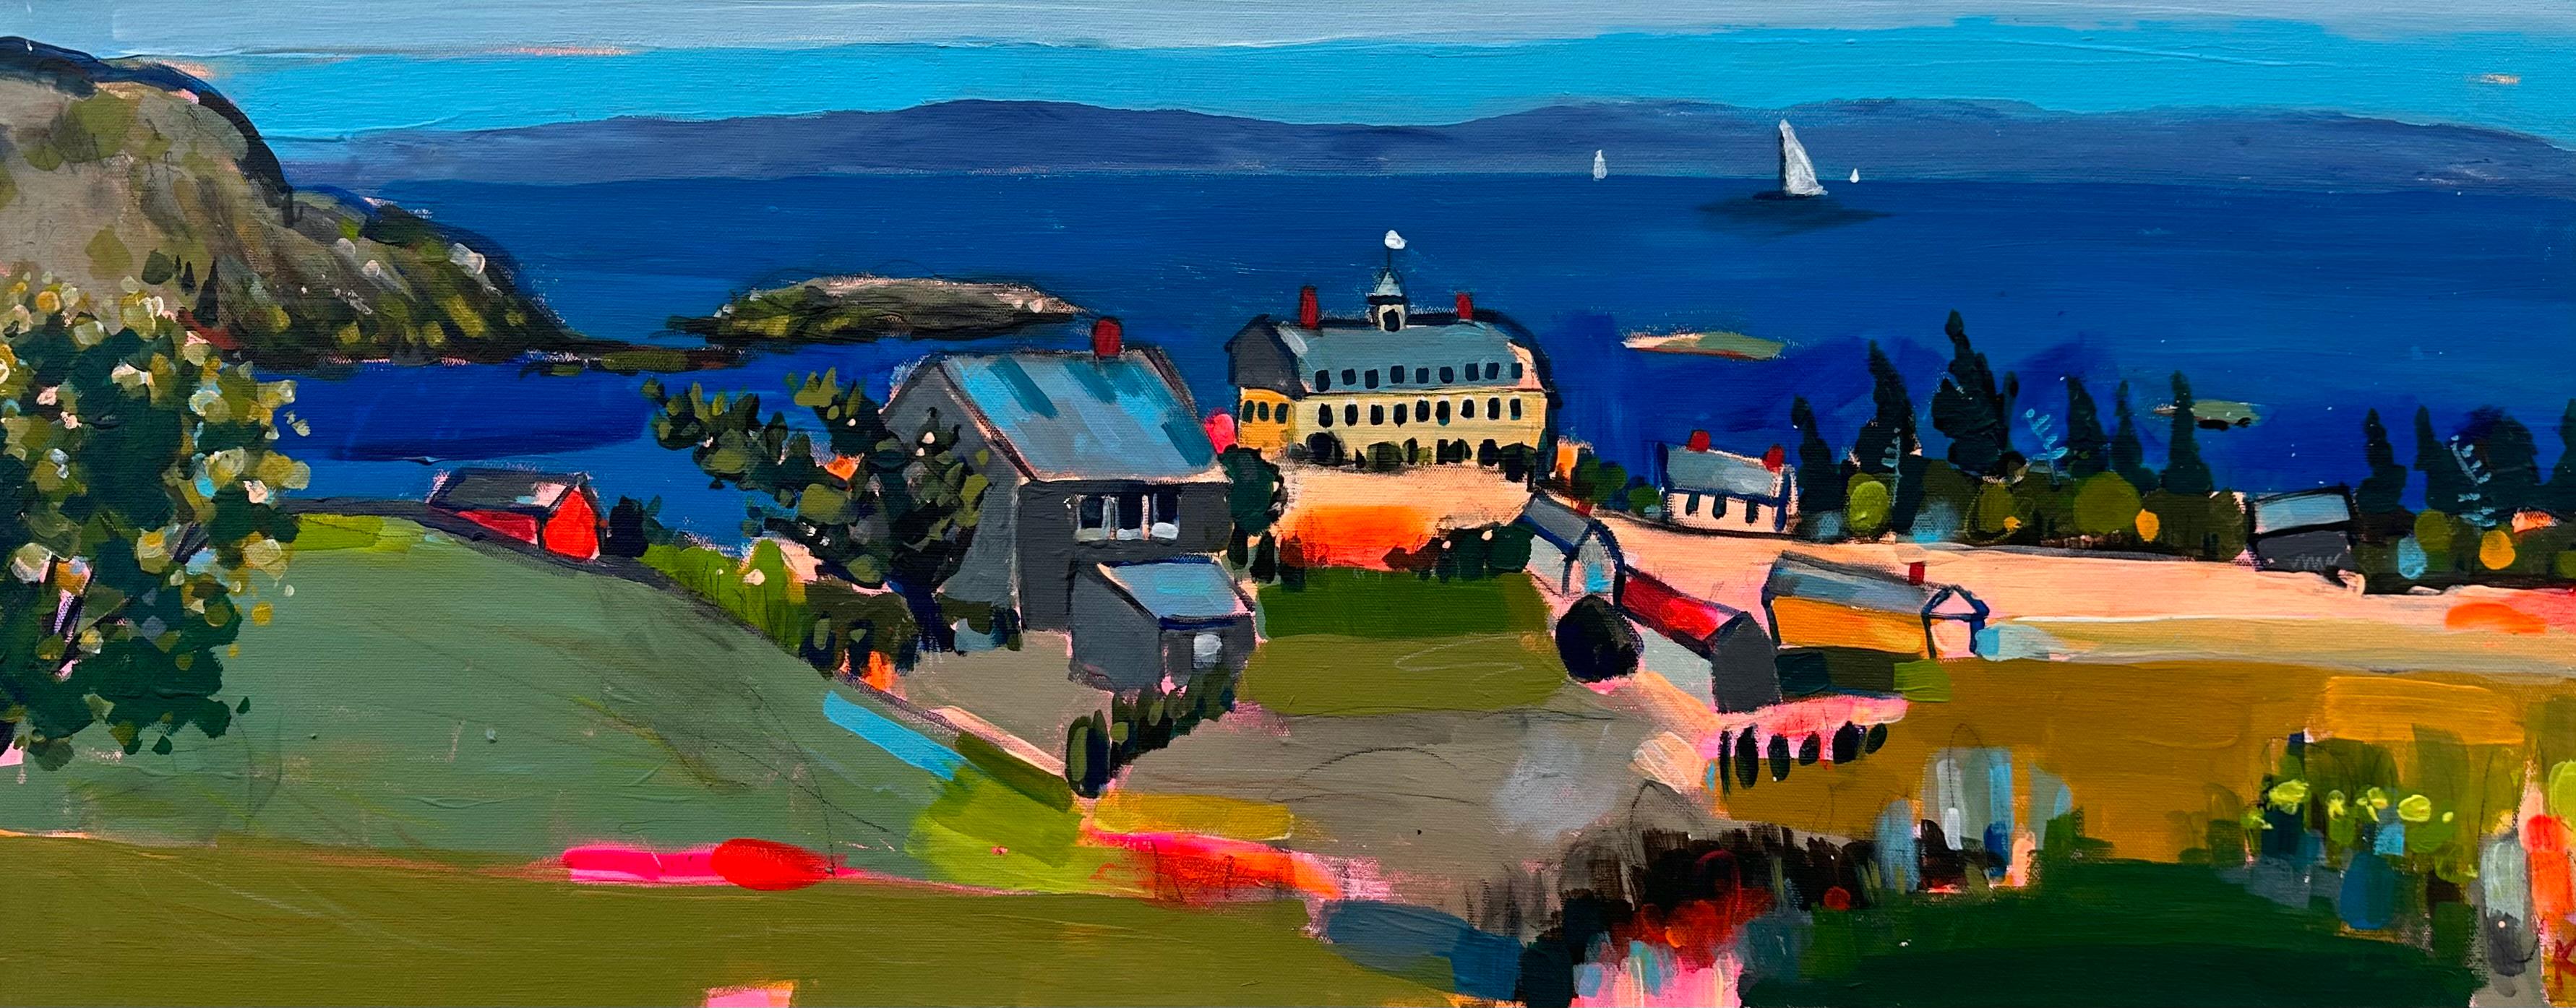 Une journée sur l'île de Monhegan, peinture d'origine - Art de Rebecca Klementovich